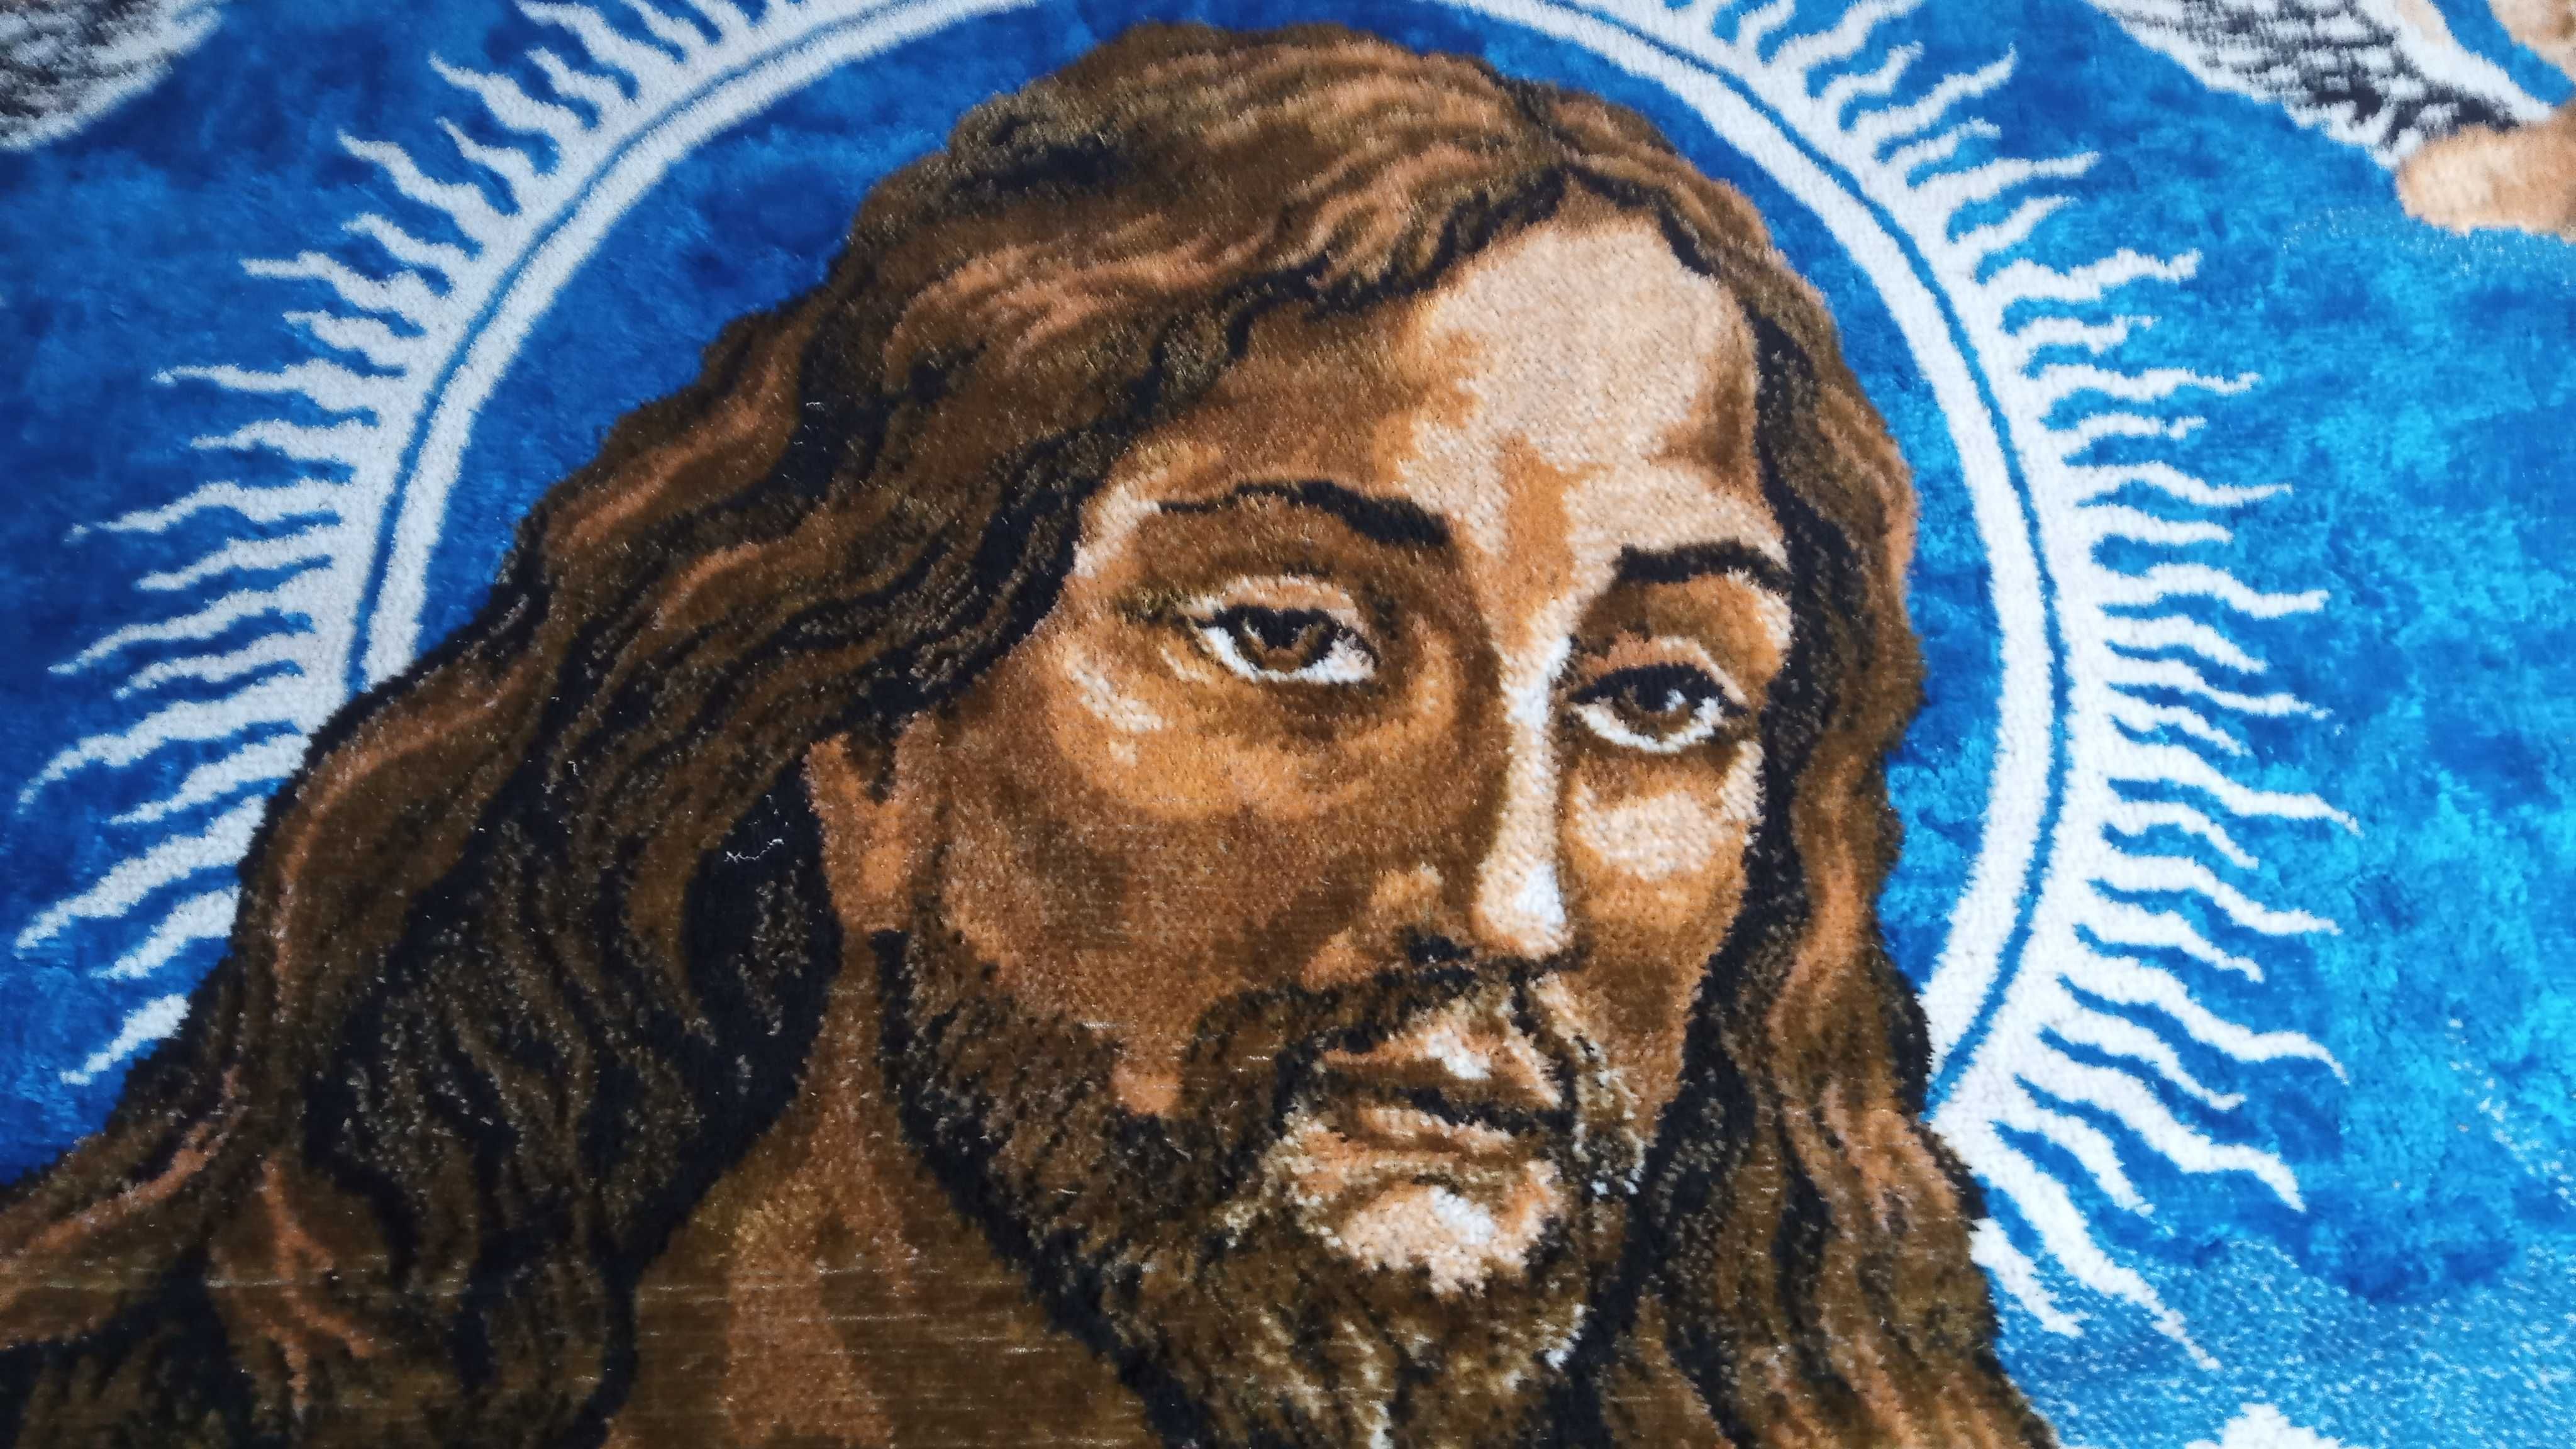 Carpeta Isus Hristos